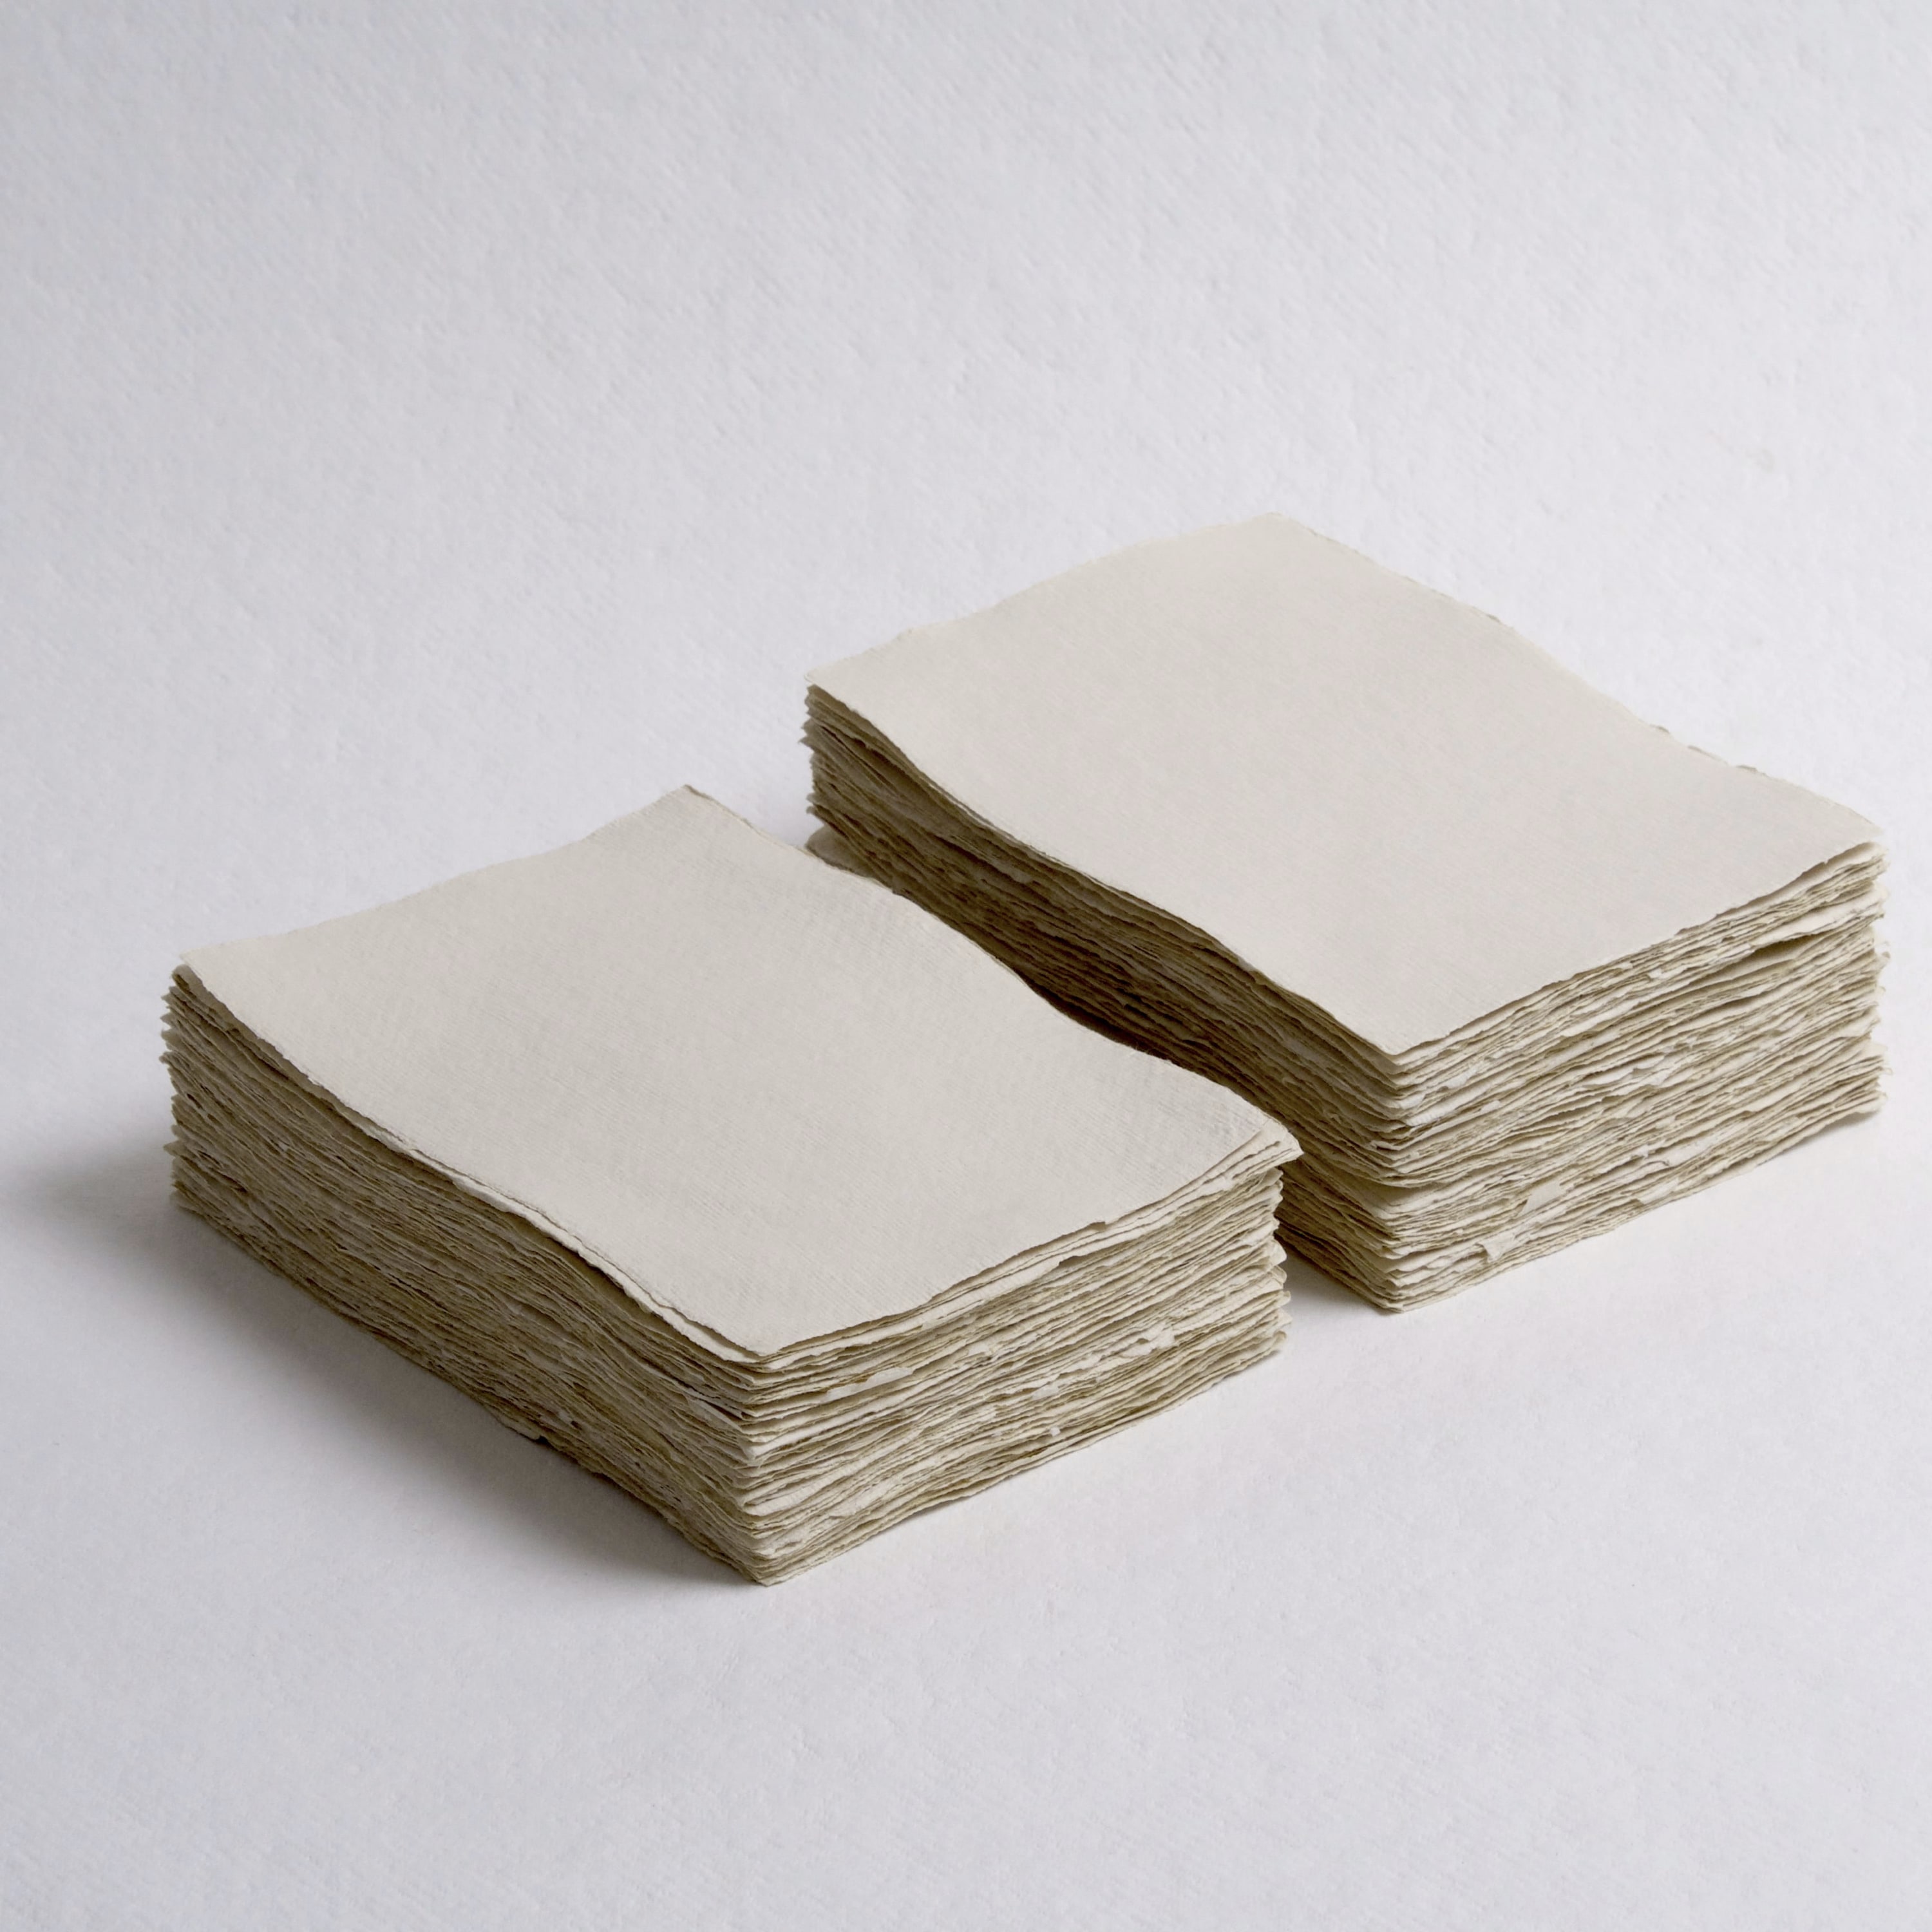 Light Sand, A6, 200 gsm – Deckle edge paper – Indian Cotton Paper Co.